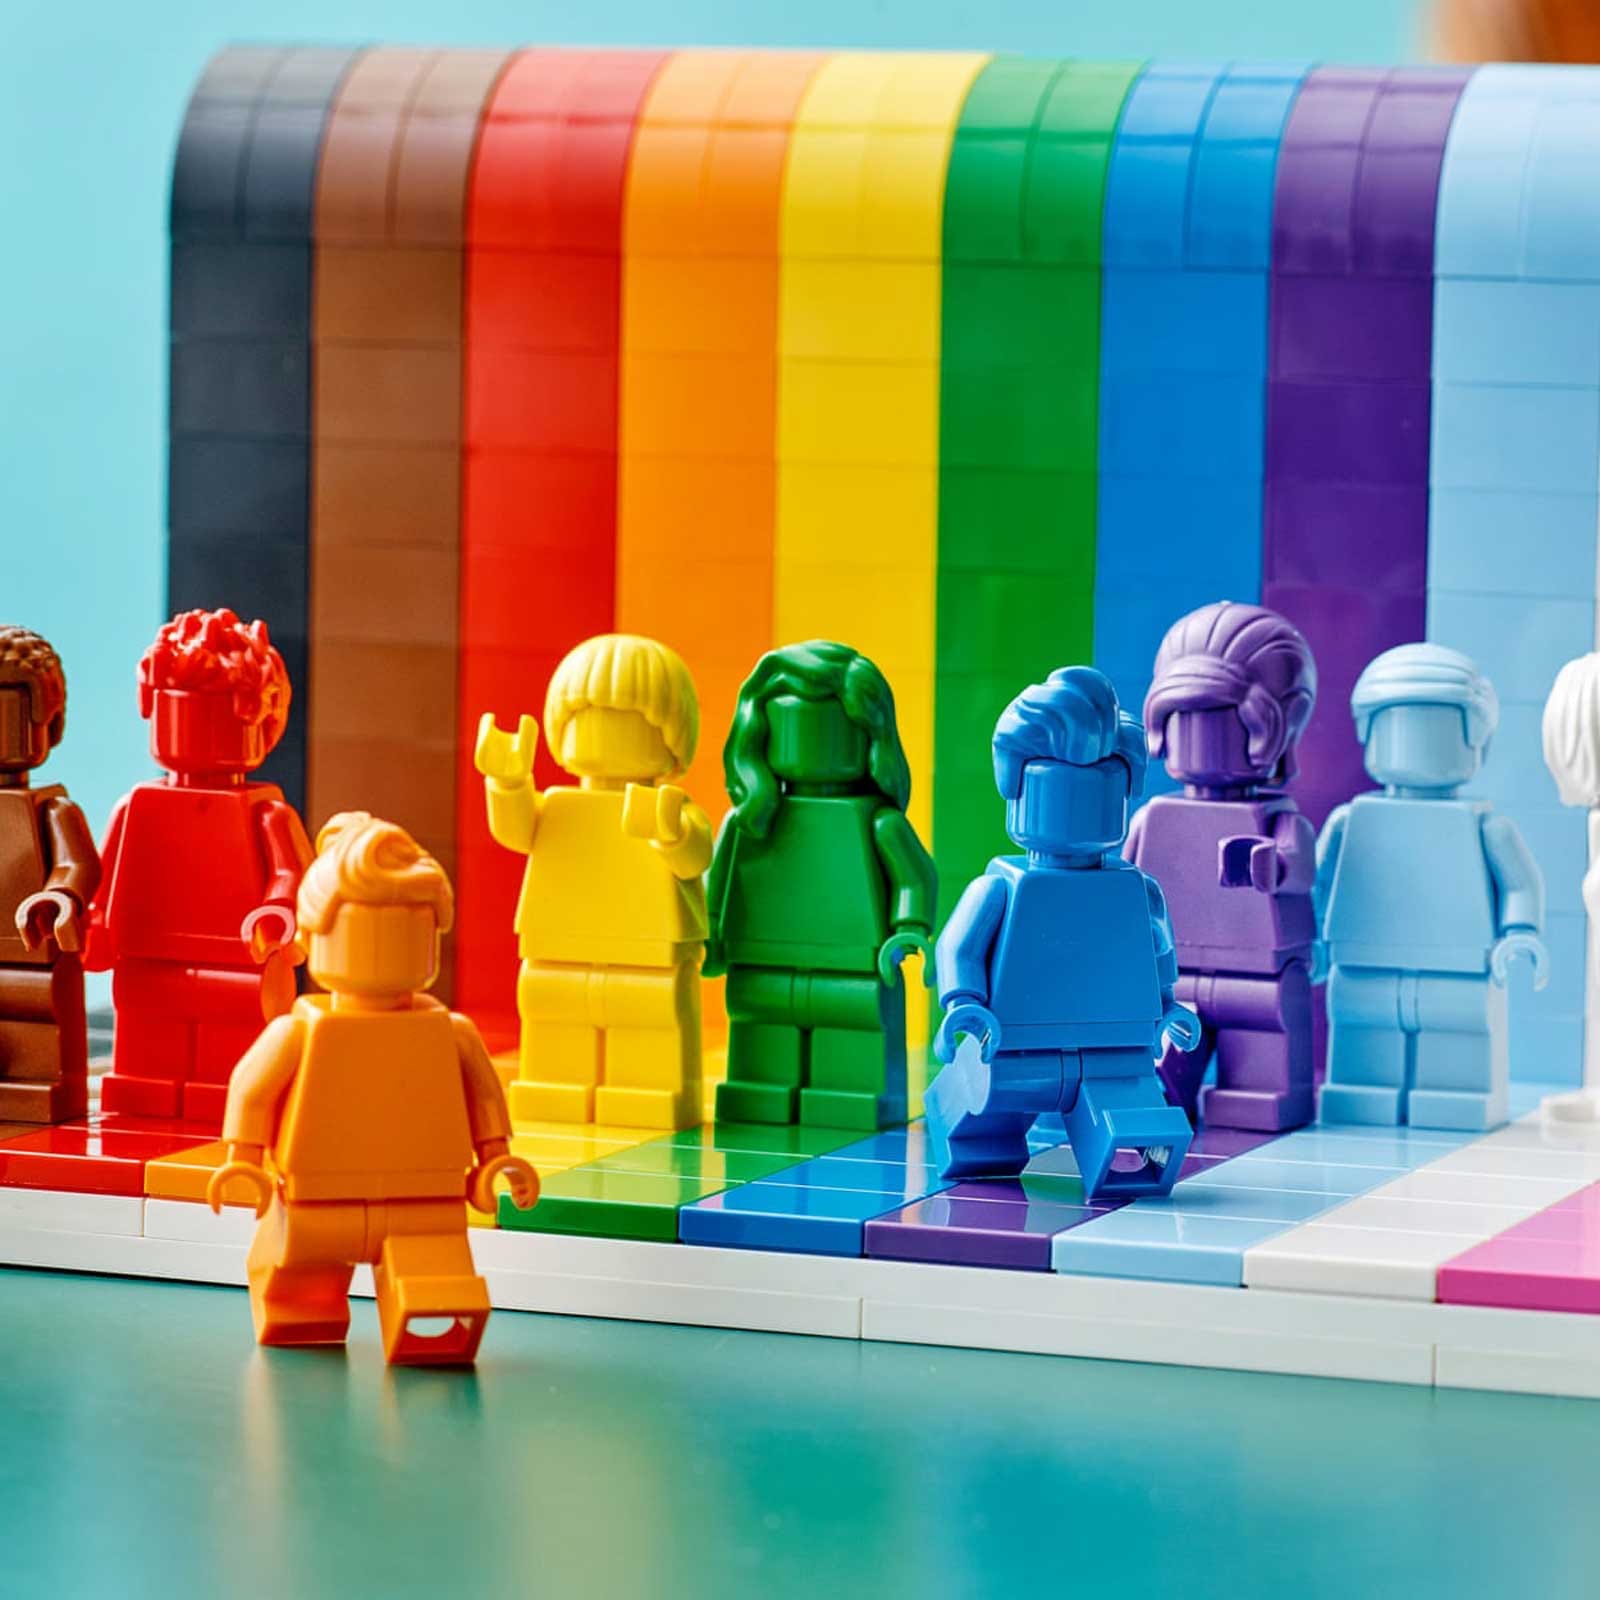 Lego выпустит первый ЛГБТК+ набор